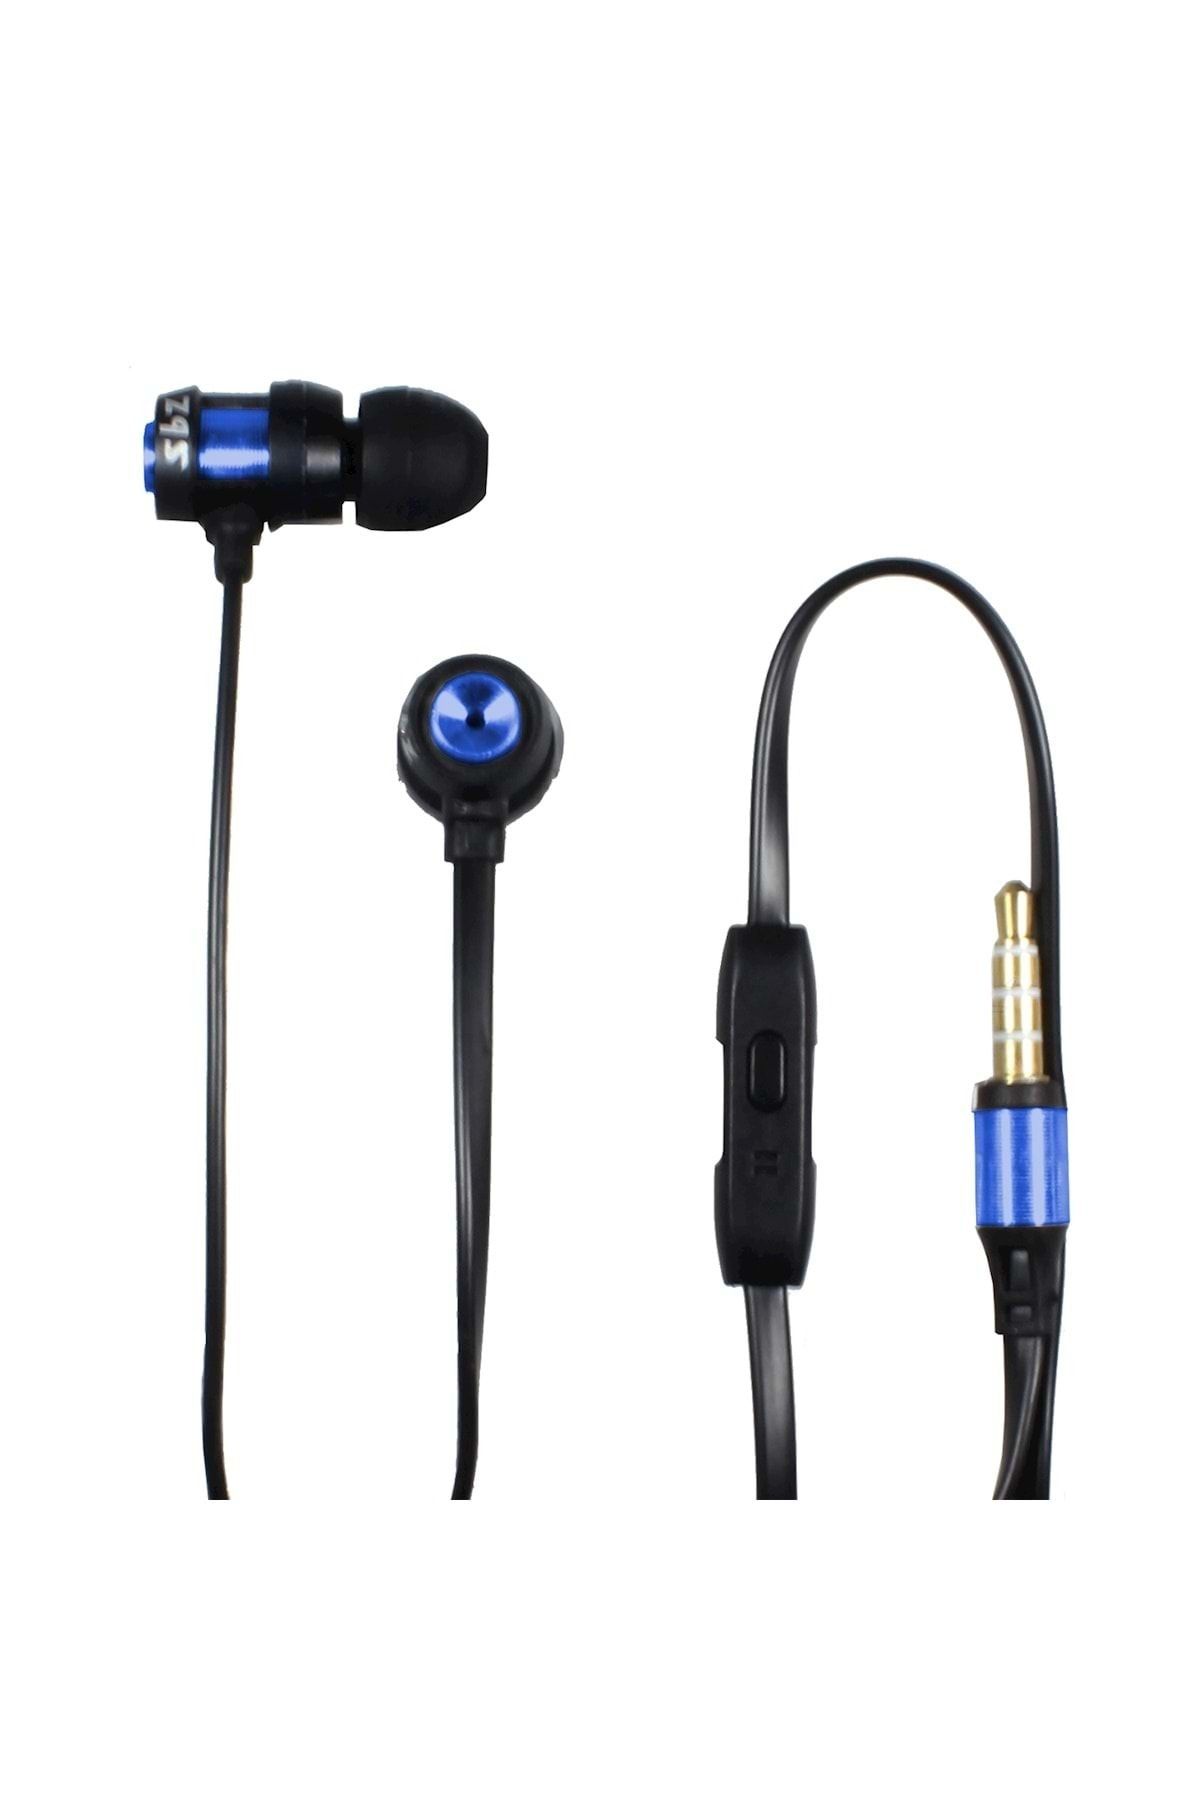 Subzero Pubg Mobile Oyuncu Kulaklığı Mikrofonlu Metal Kulaklık Ep84 - Mavi